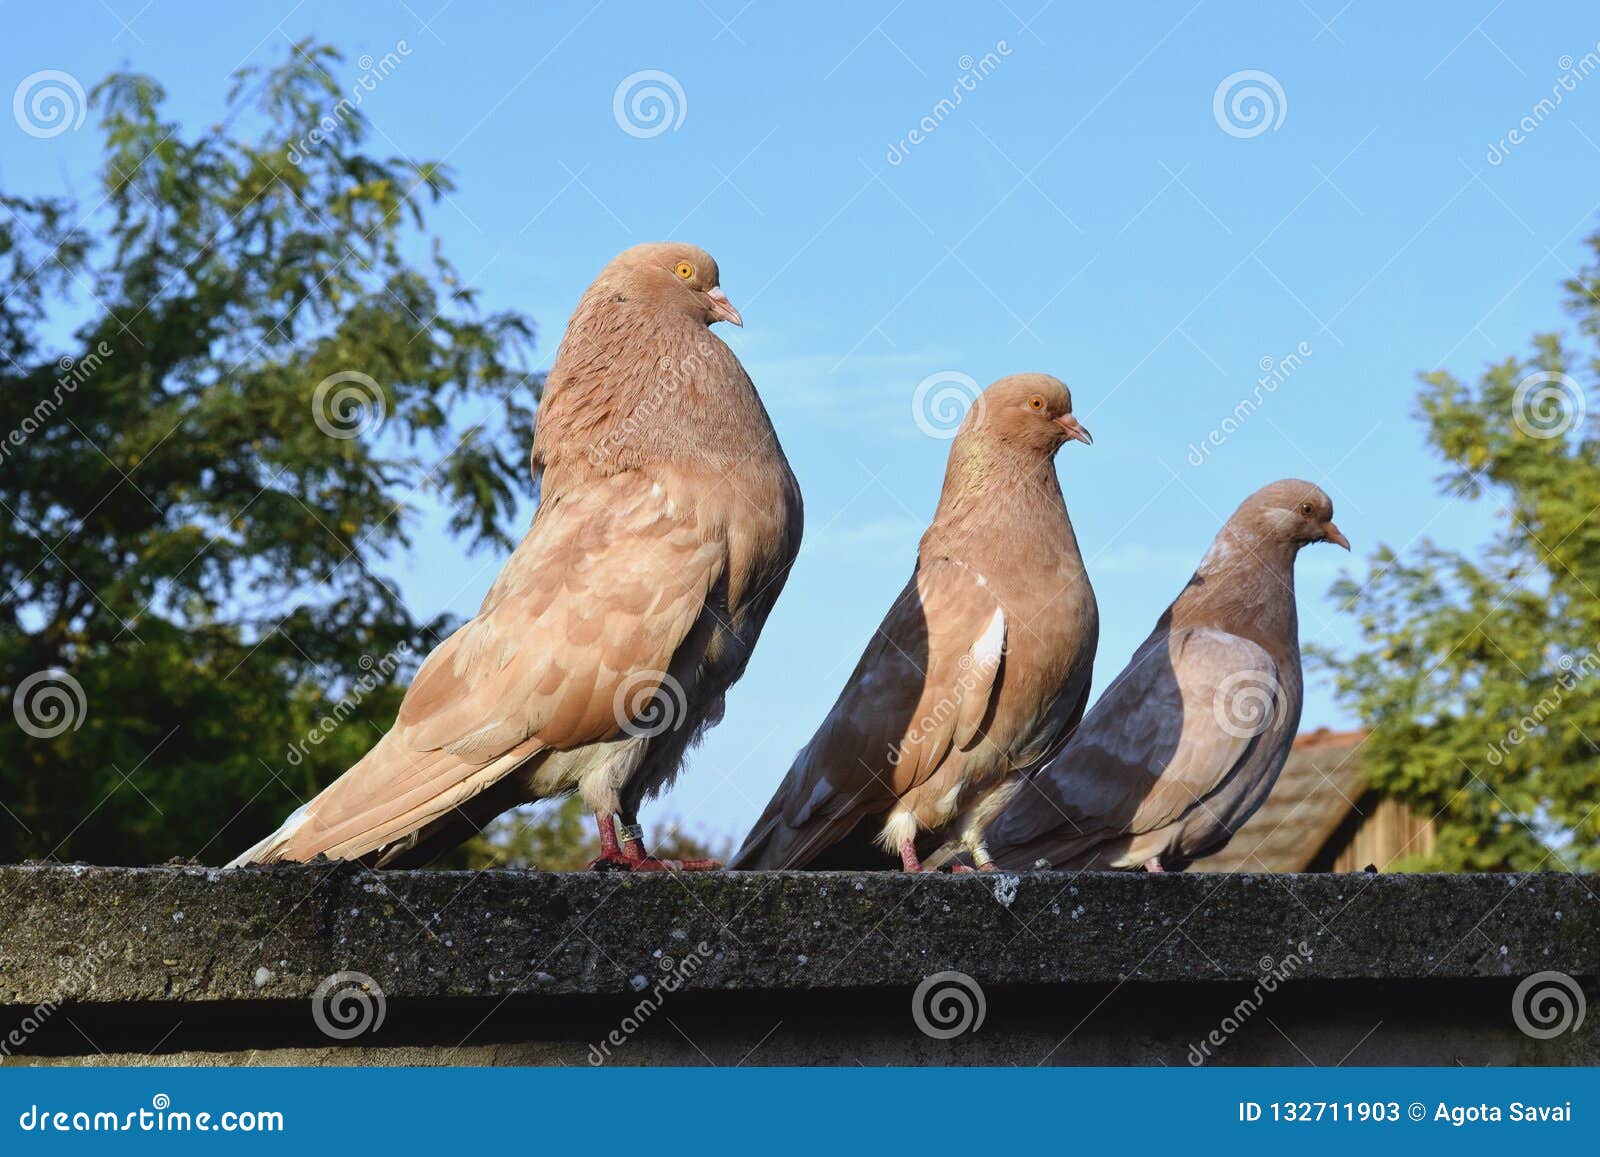 brown-pigeon-family-orange-eye-sitting-wall-pair-pigeons-nikolaev-sit-male-female-baby-chick-132711903.jpg